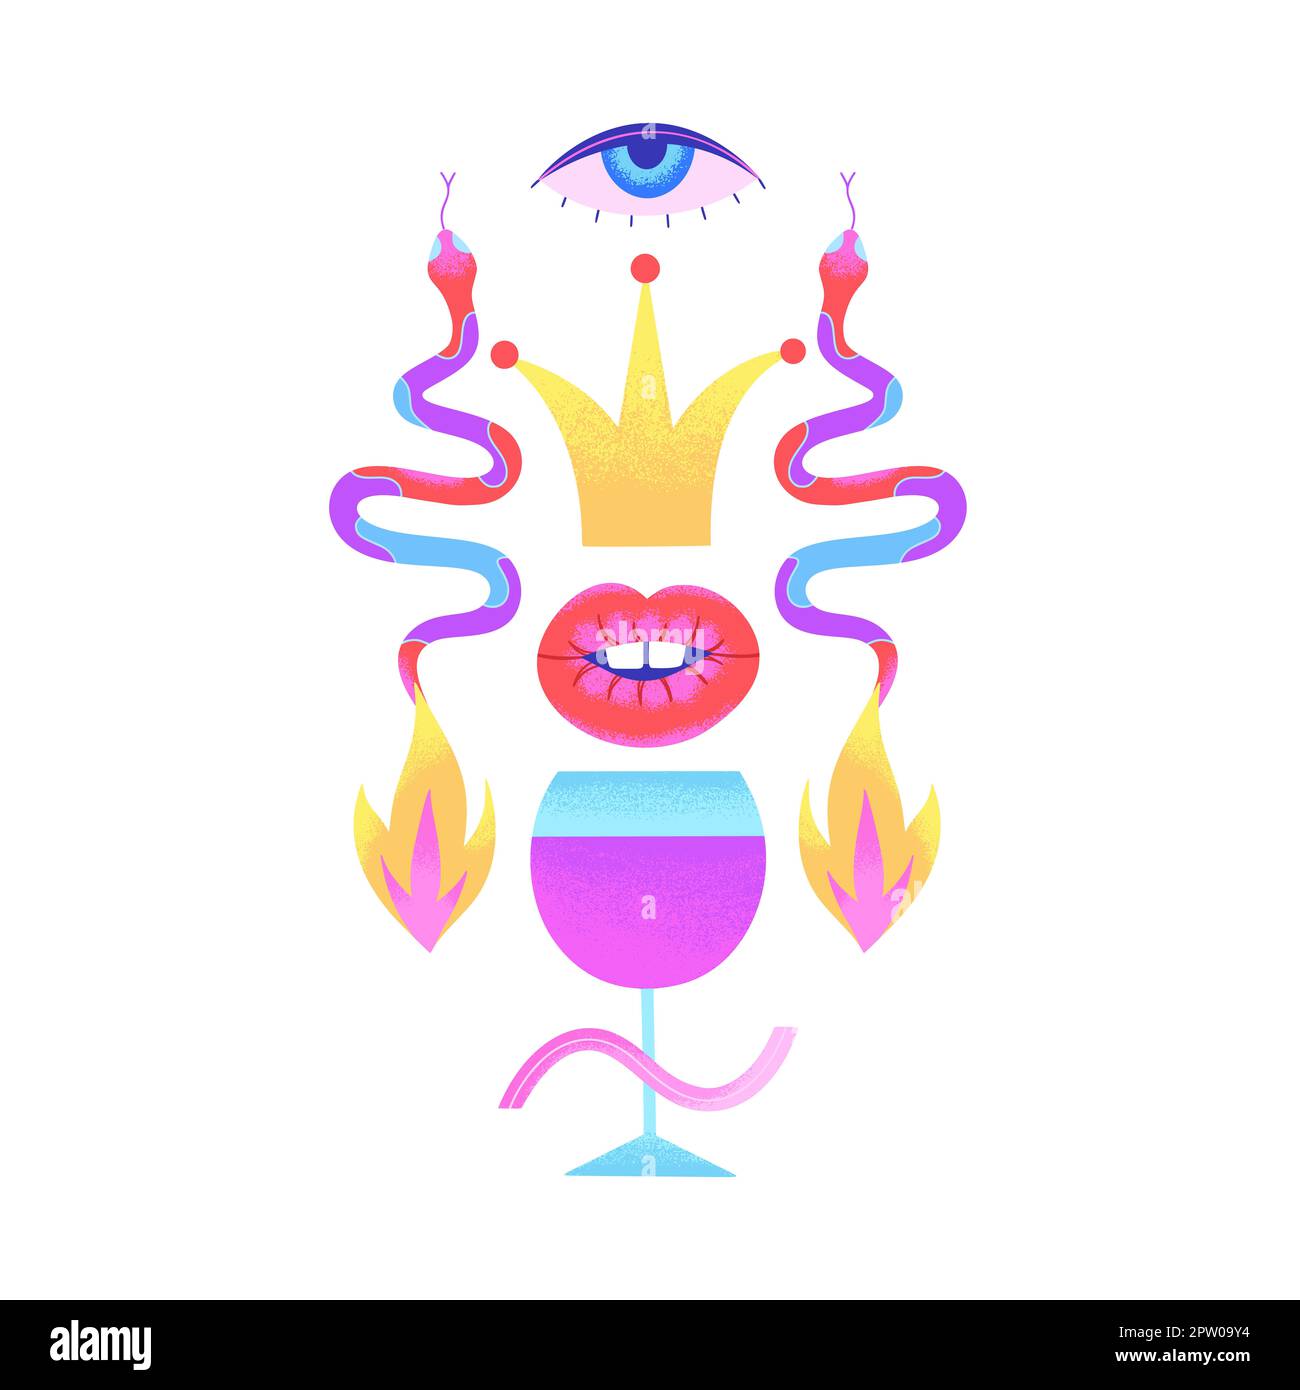 Psychedelische Zusammensetzung mit einem Glas Wein, Schlangen, Krone, Auge, Lippen, Feuer auf weißem Hintergrund isoliert. Zeitgenössische Kunst. Seltsam surreal abstrakt de Stockfoto